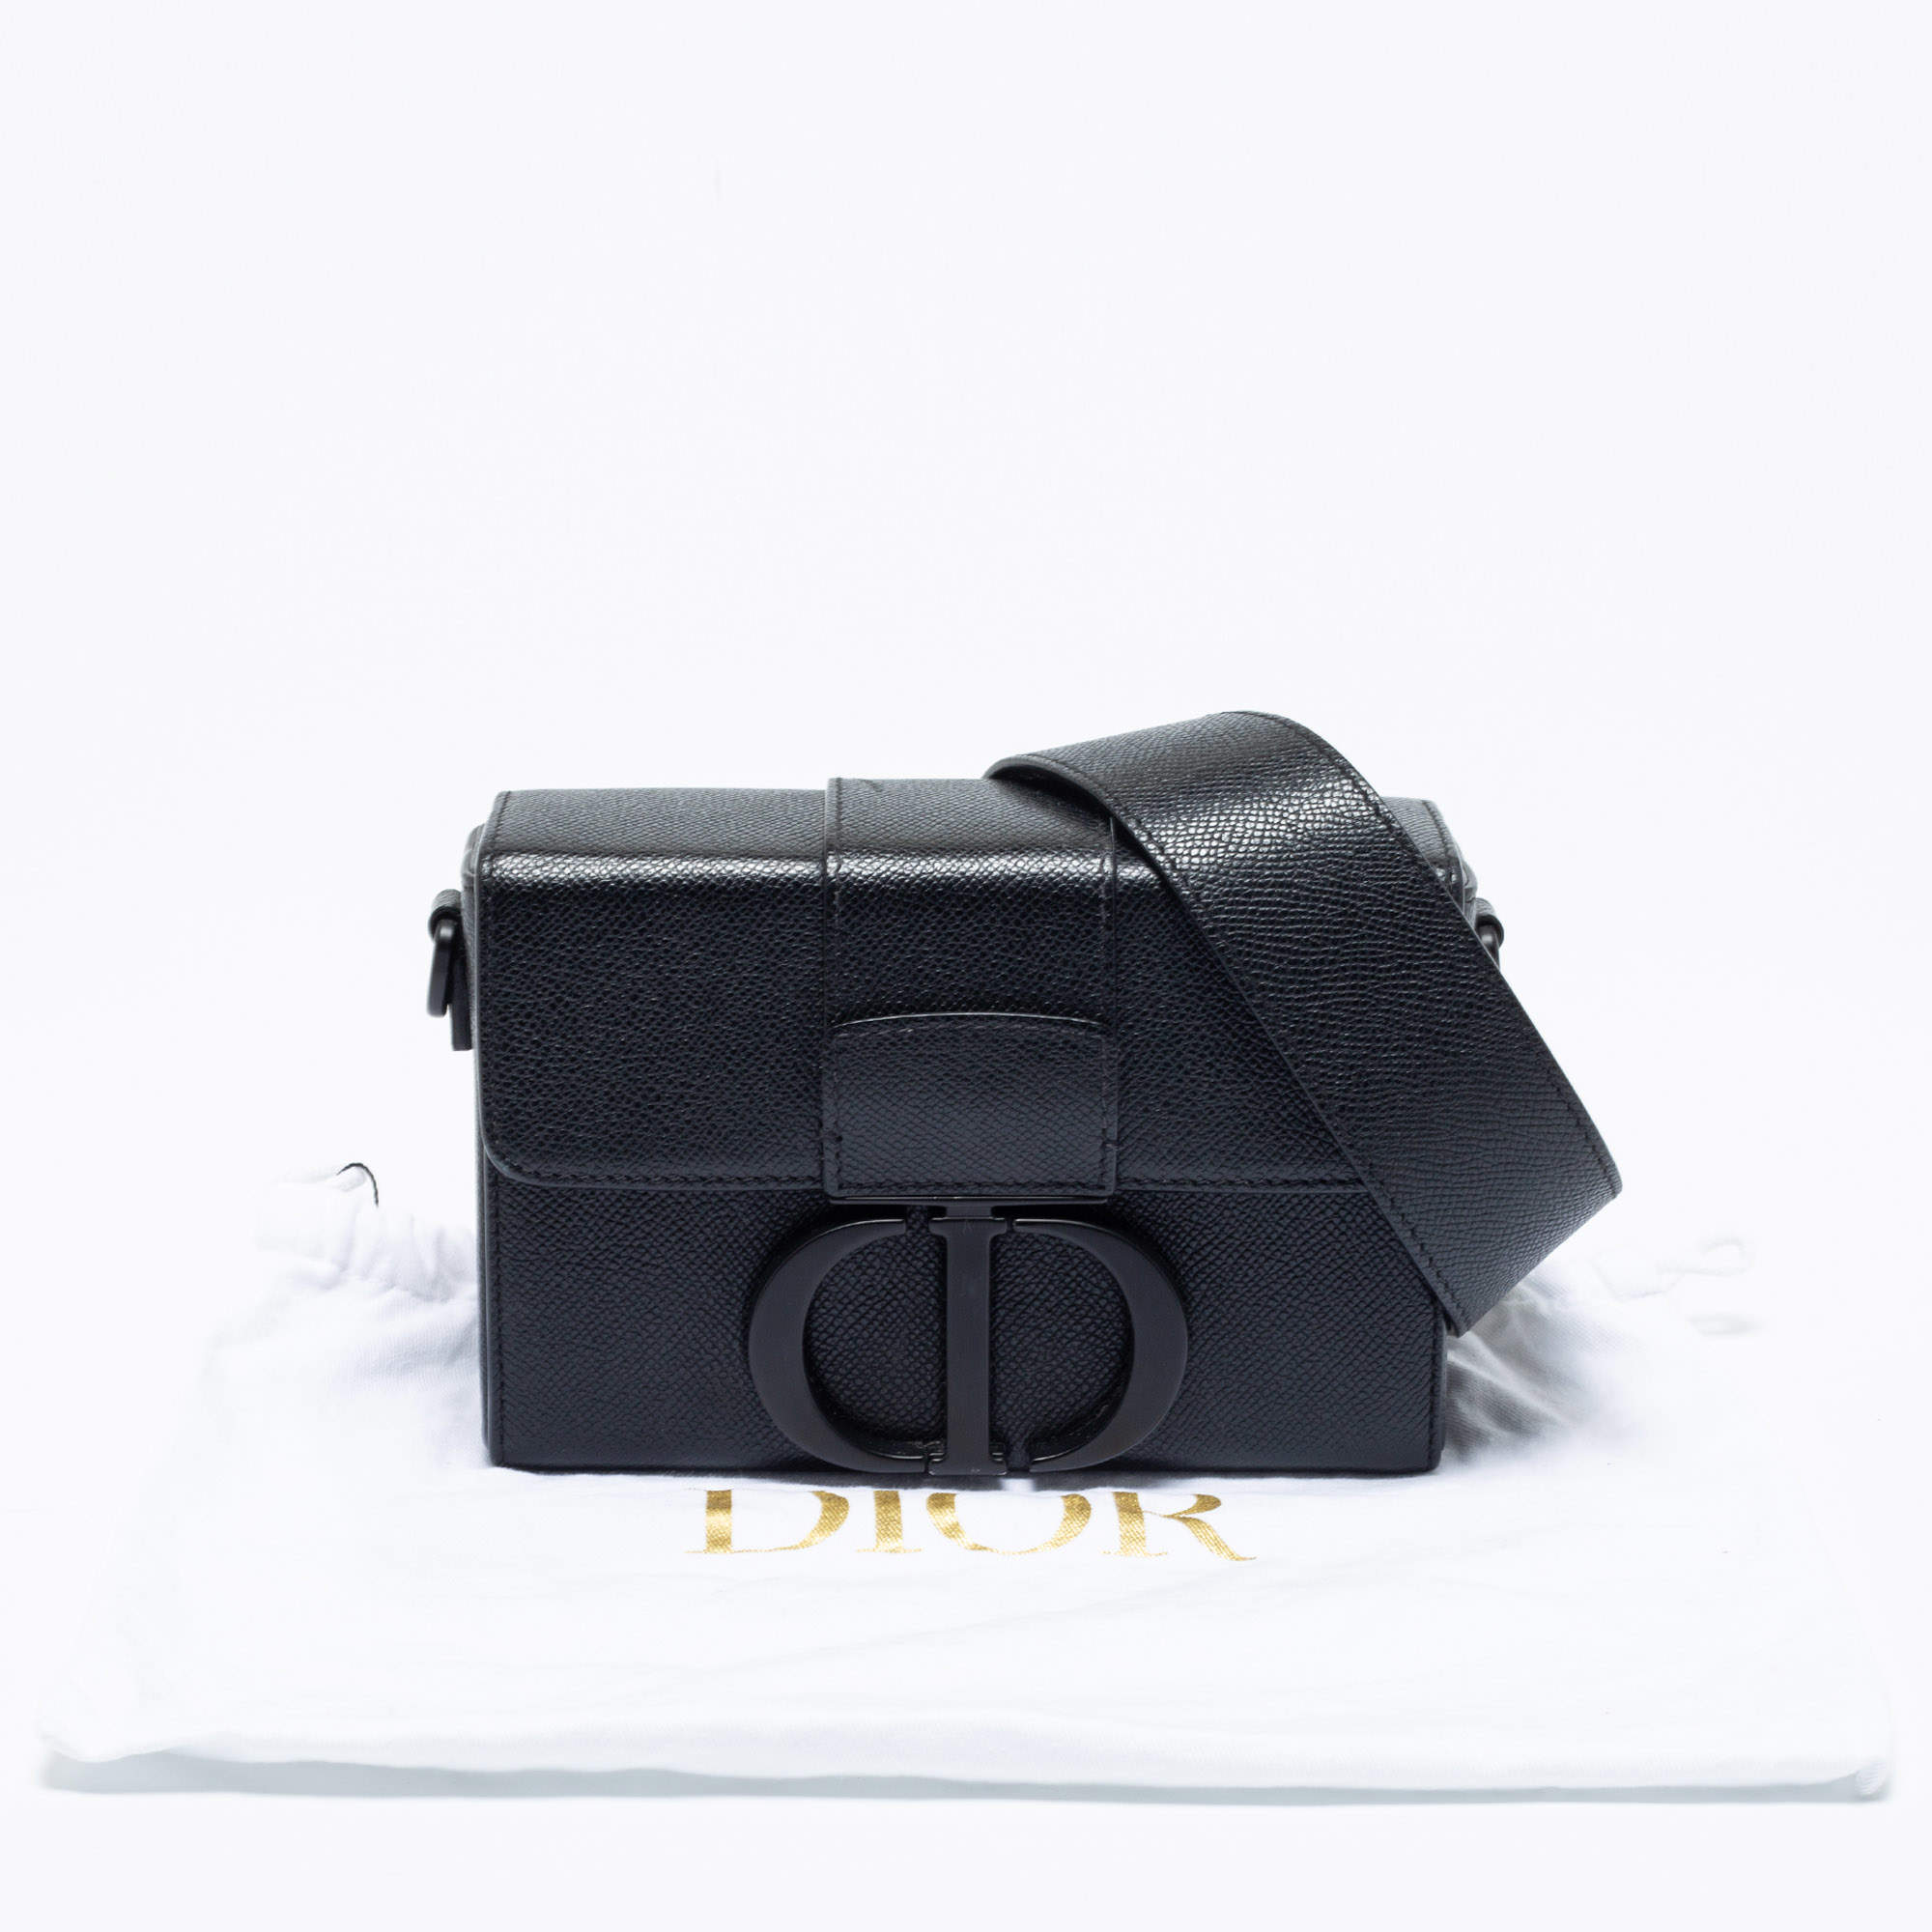 30 montaigne leather mini bag Dior Black in Leather - 33584902